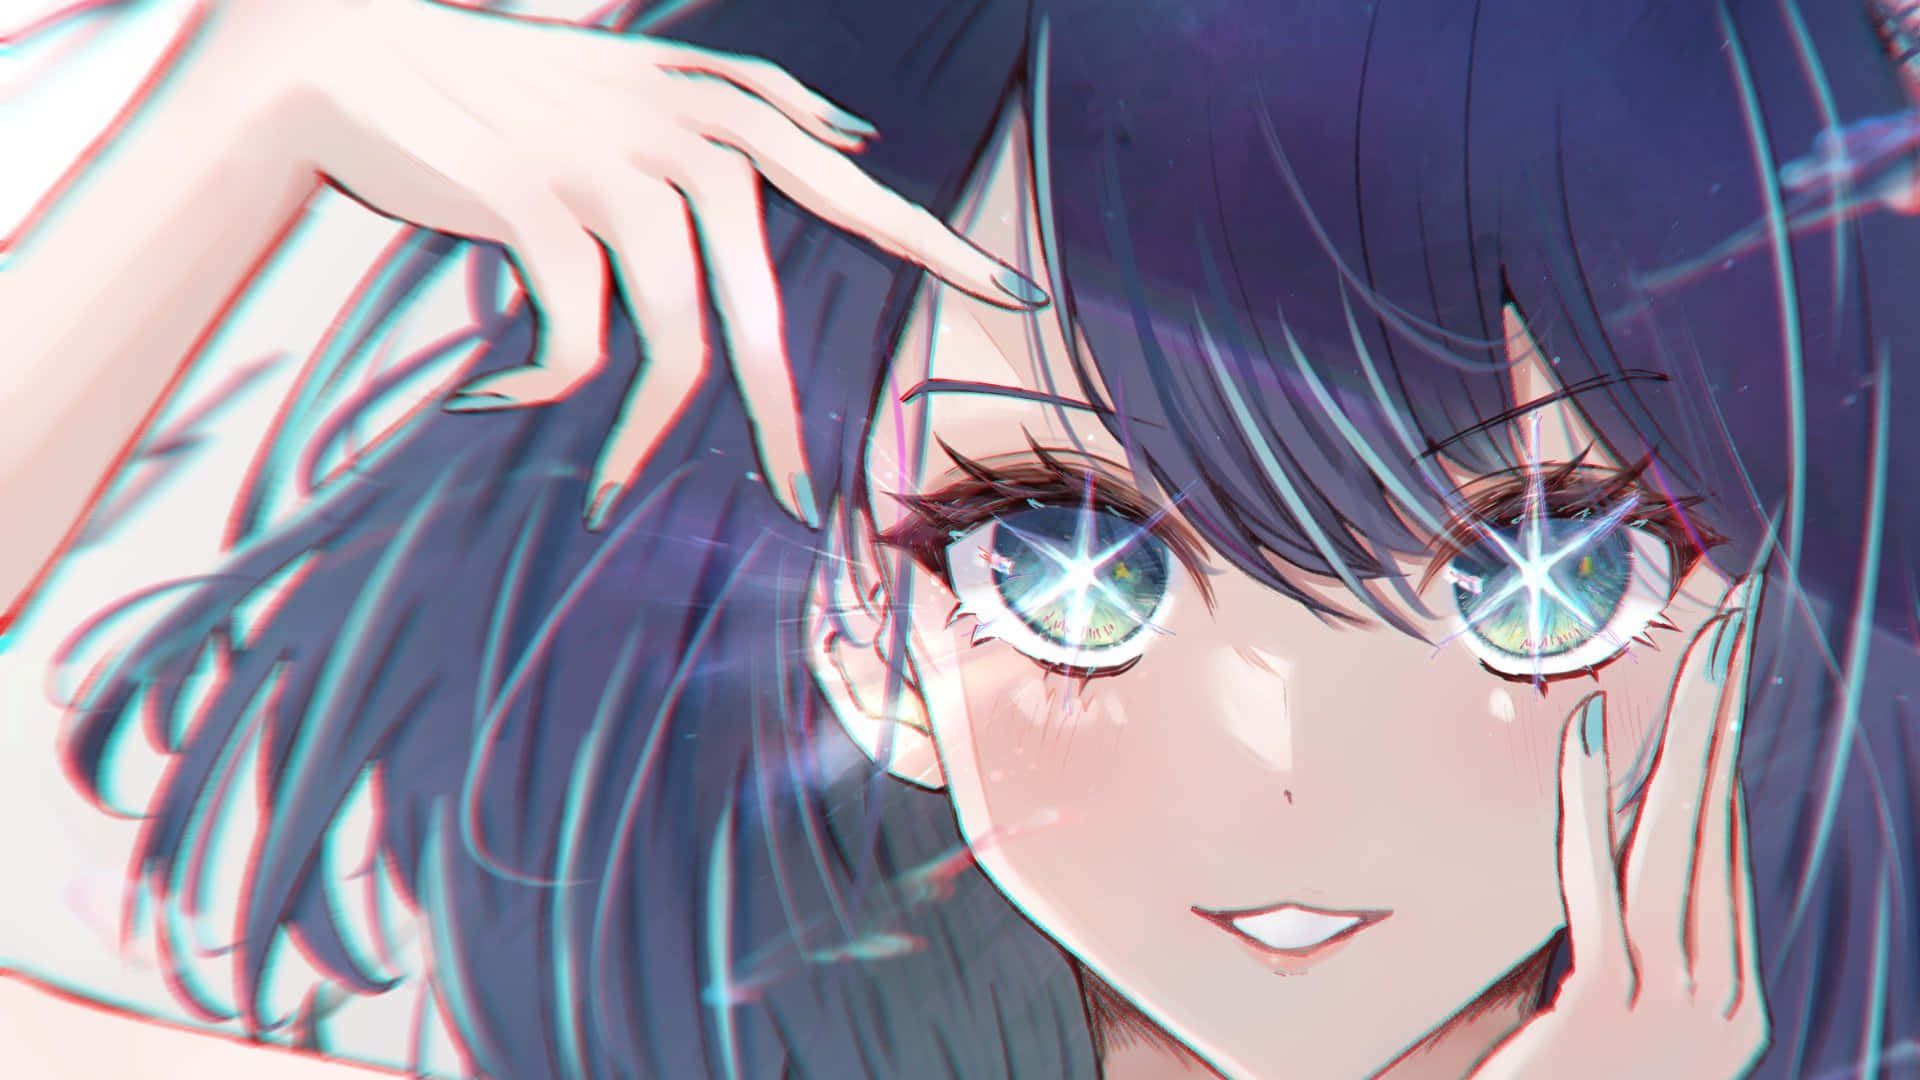 Sparkling Eyes Anime Girl Artwork Wallpaper